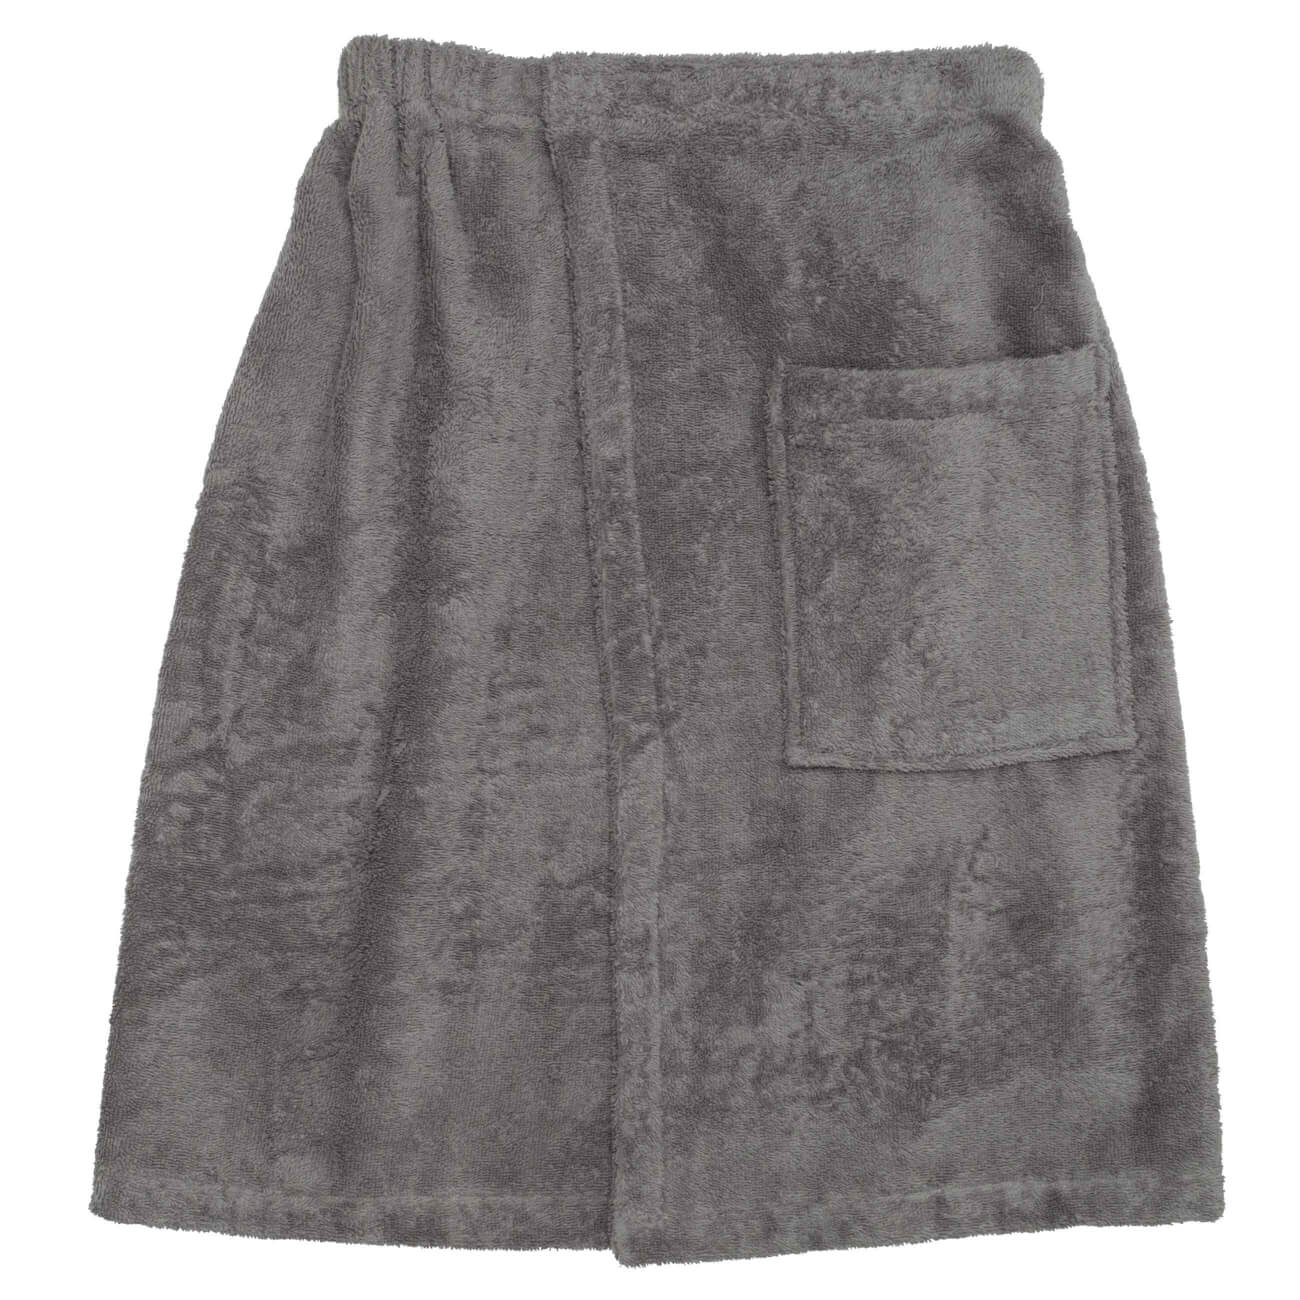 Полотенце-килт мужское, 70х160 см, на липучке, хлопок, темно-серое, Spa towel полотенце eumenia 70x140 см белое